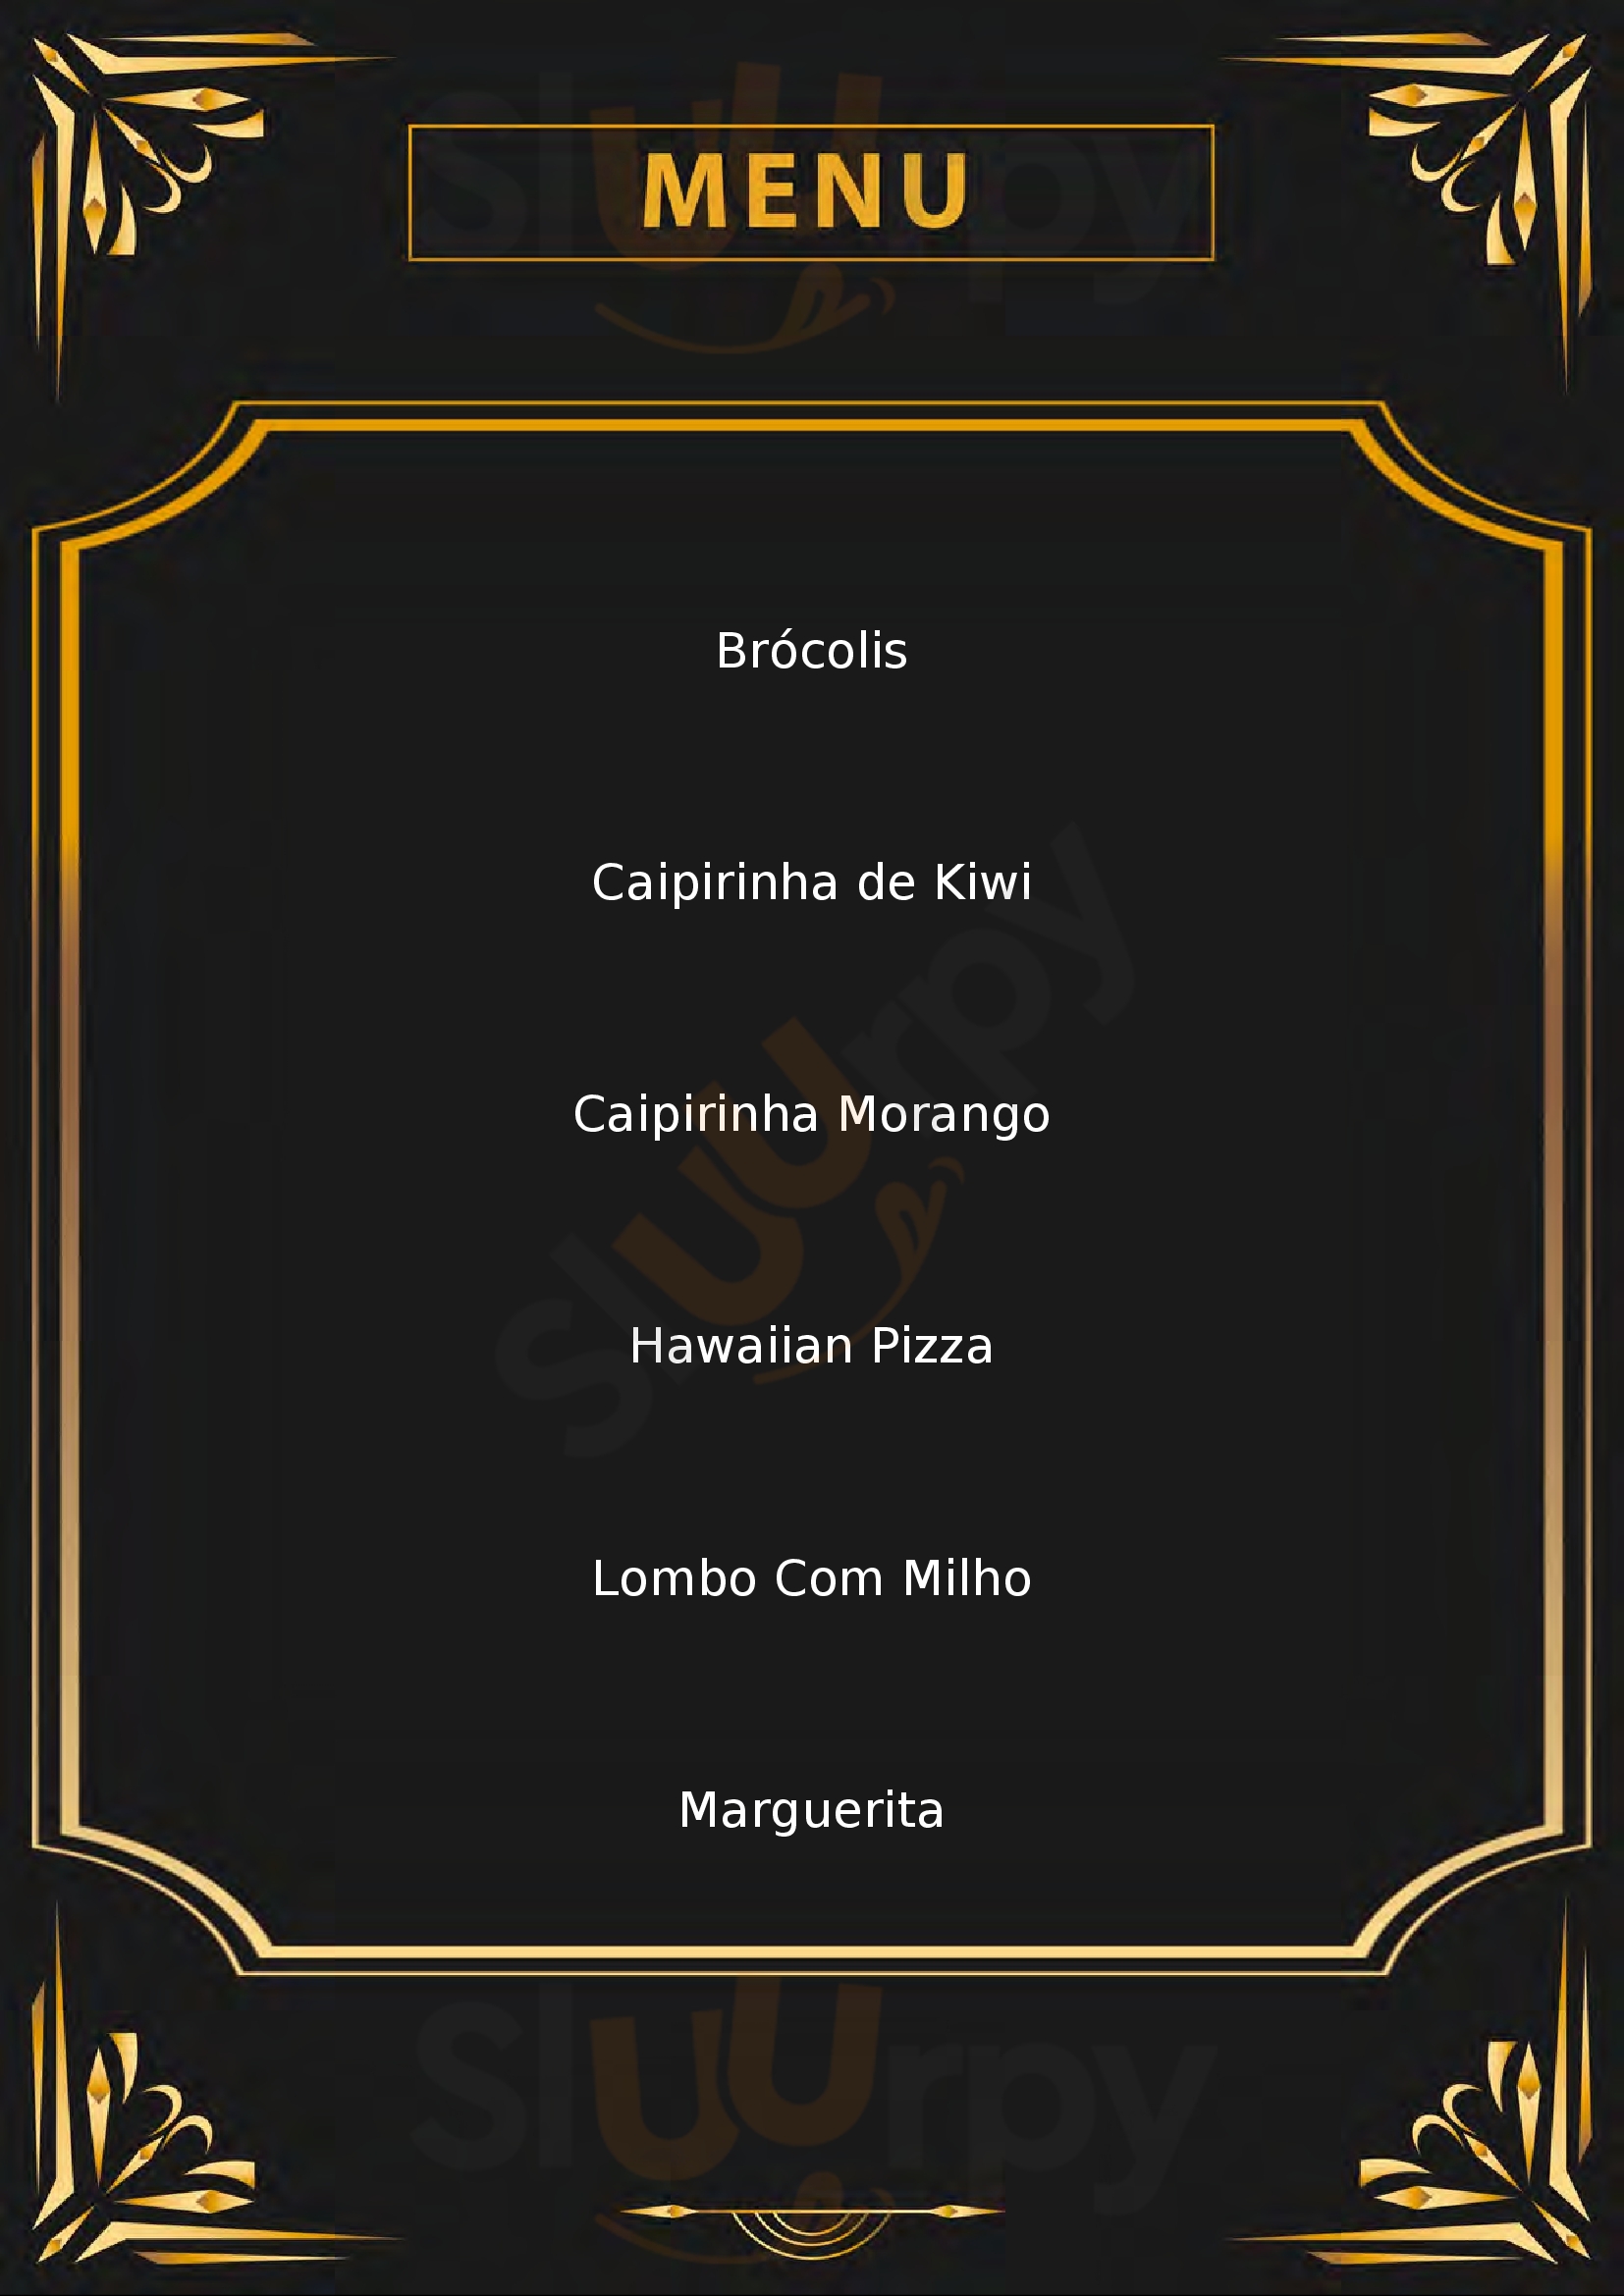 Pizza Prime - Unidade Santa Mônica Florianópolis Menu - 1